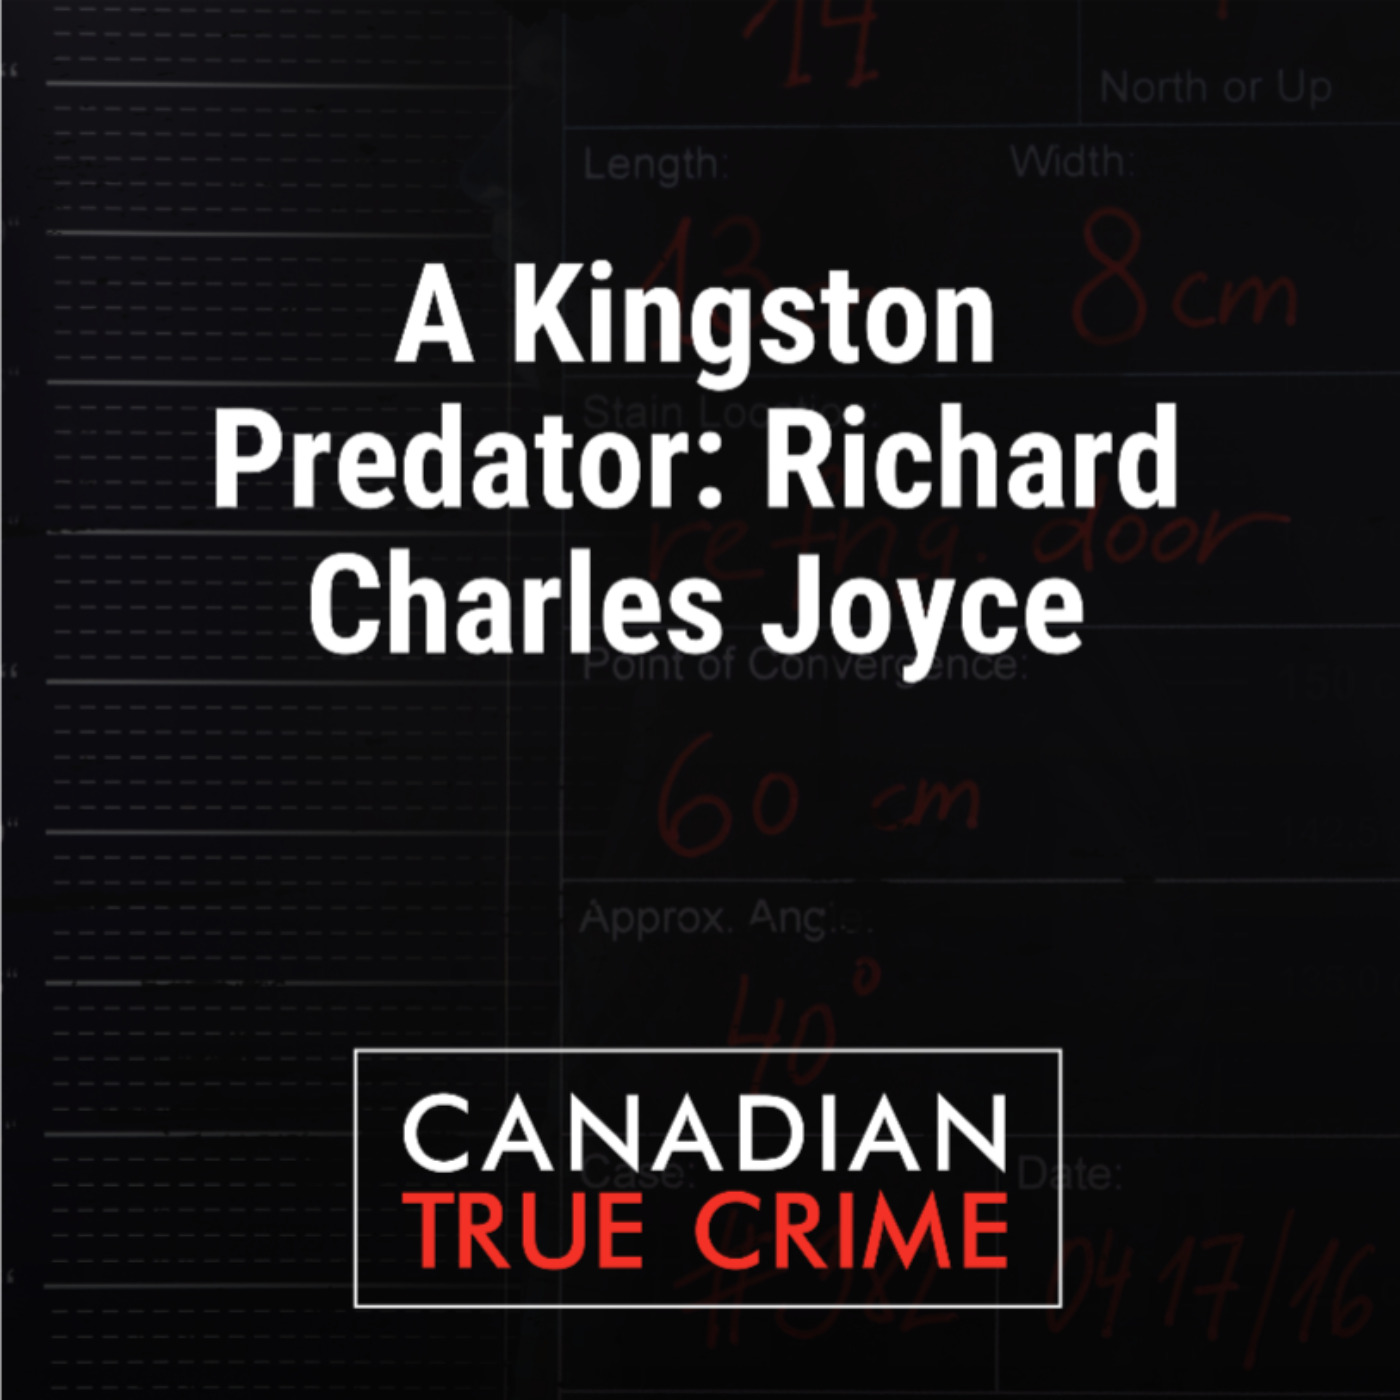 A Kingston Predator: Richard Charles Joyce—Part 1